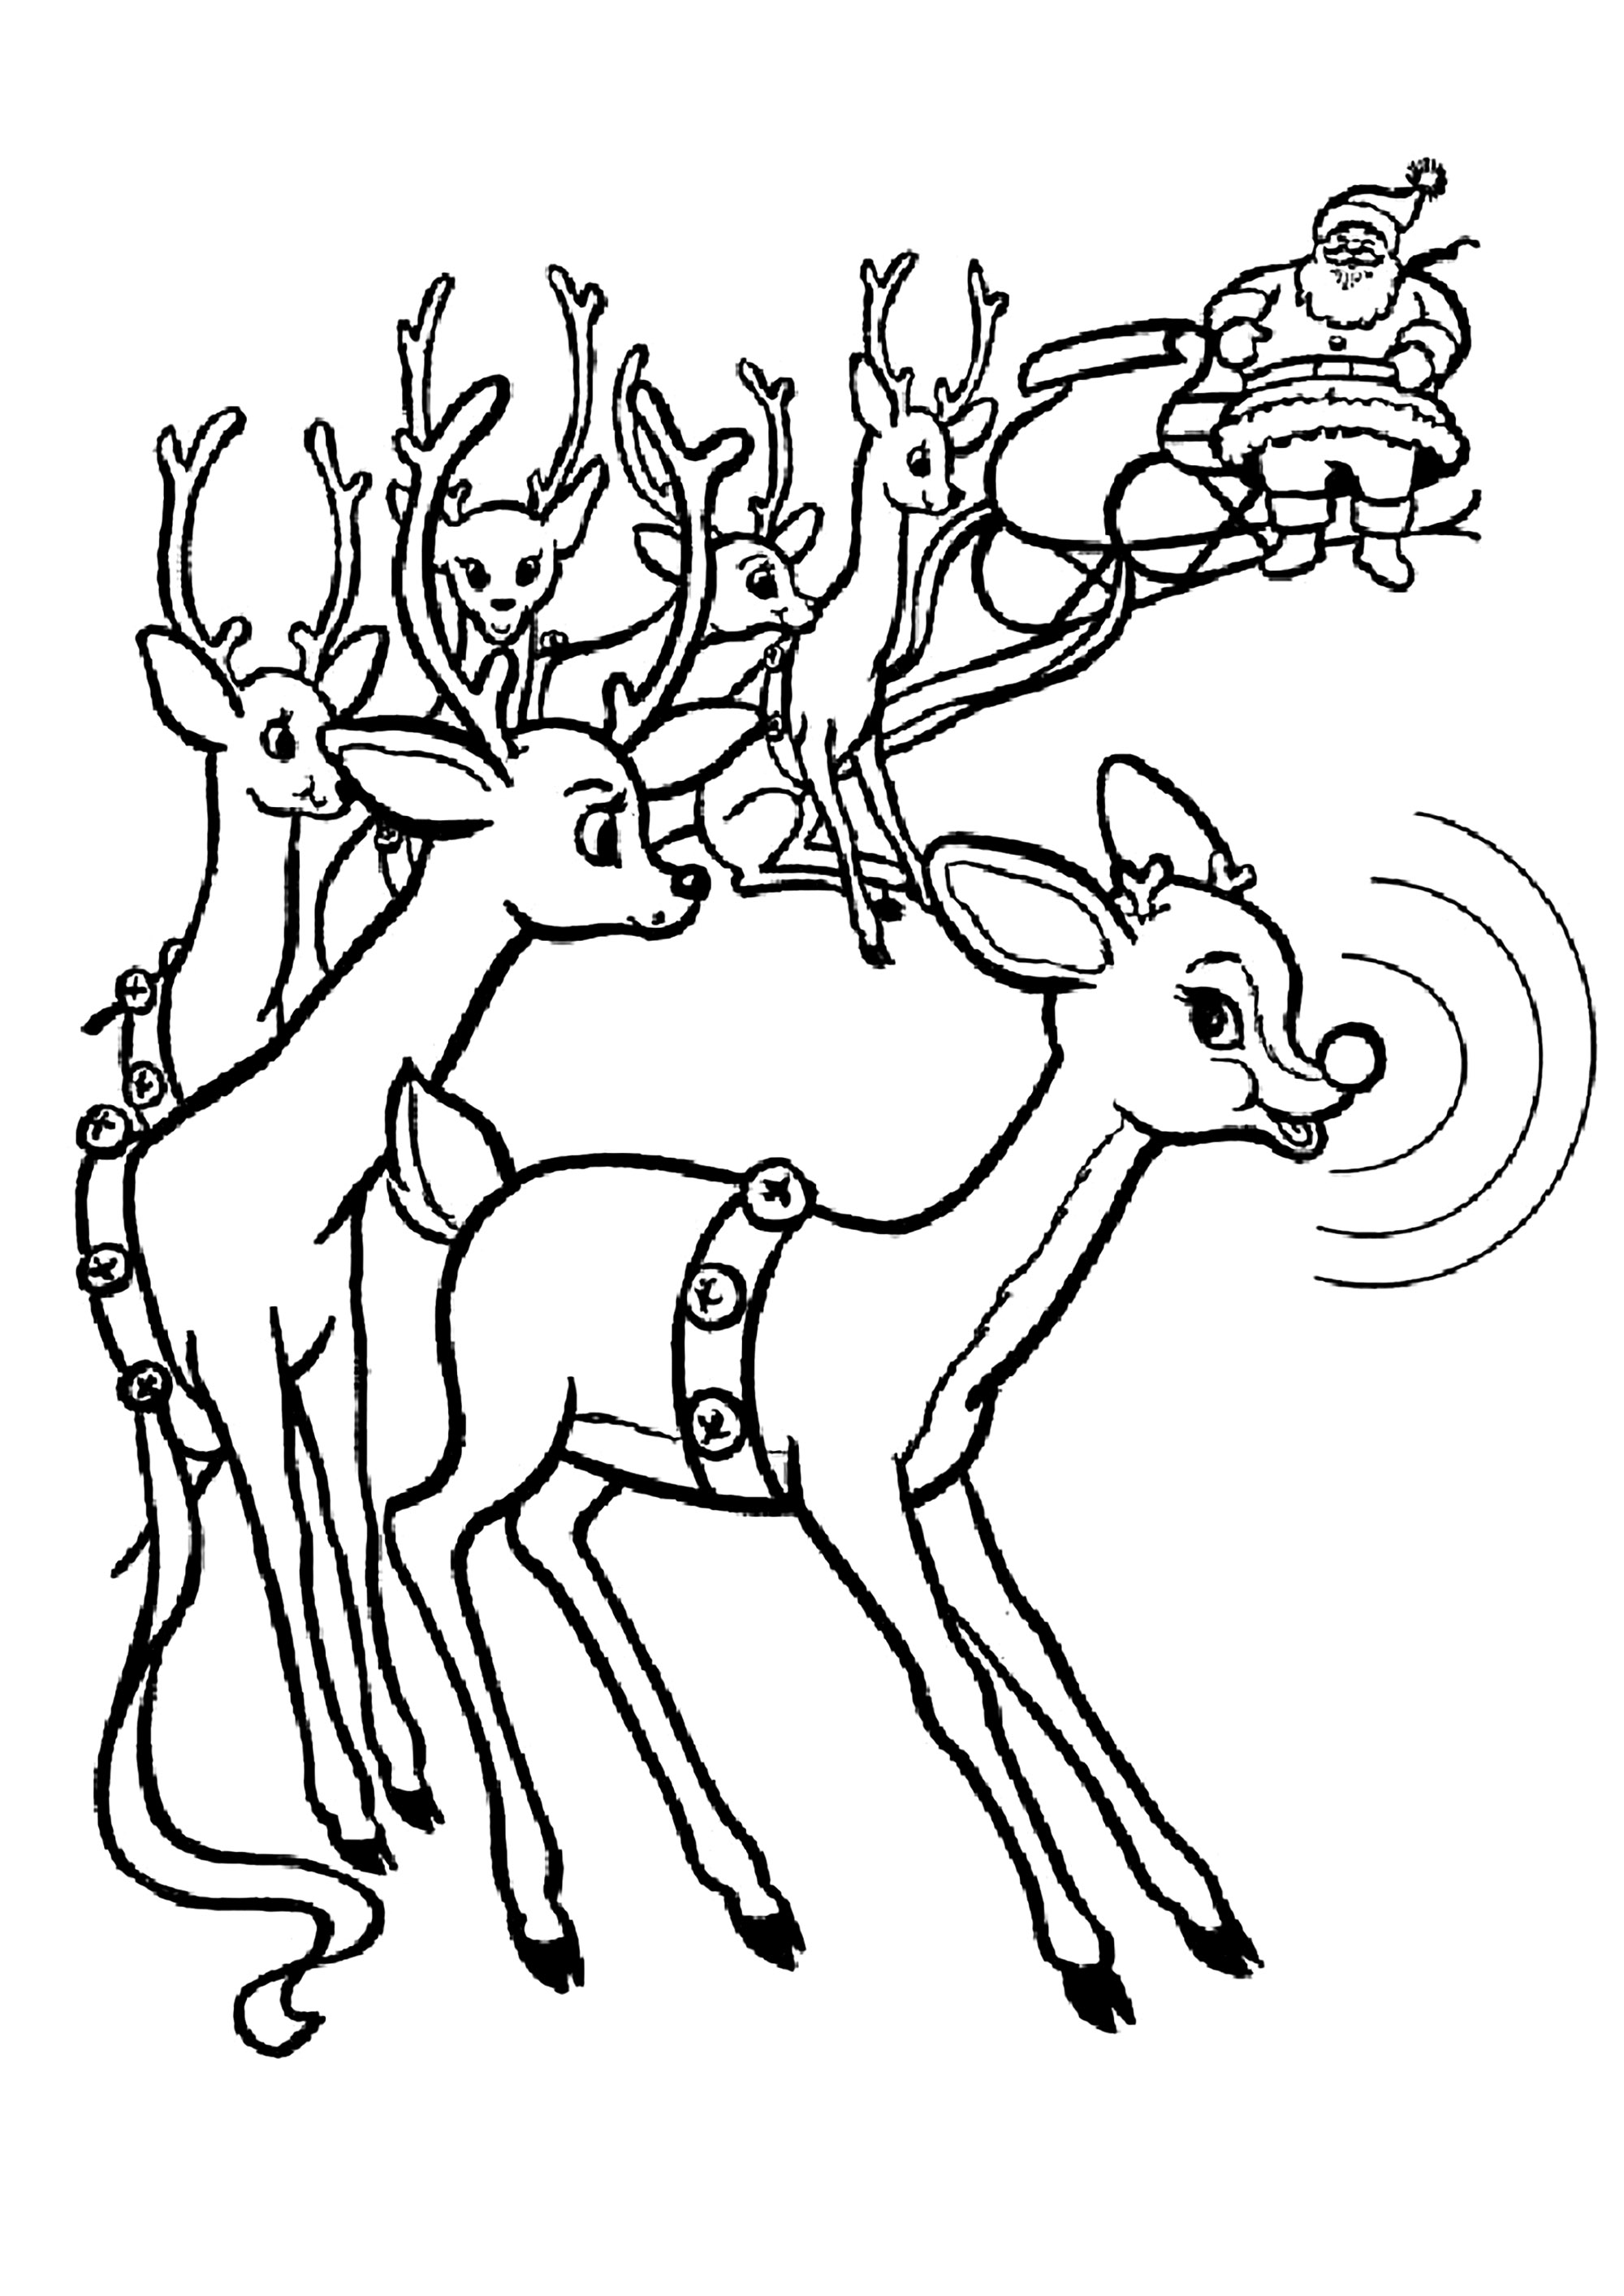 Rodolphe / Rudolphe, a rena do nariz vermelho e o trenó do Pai Natal